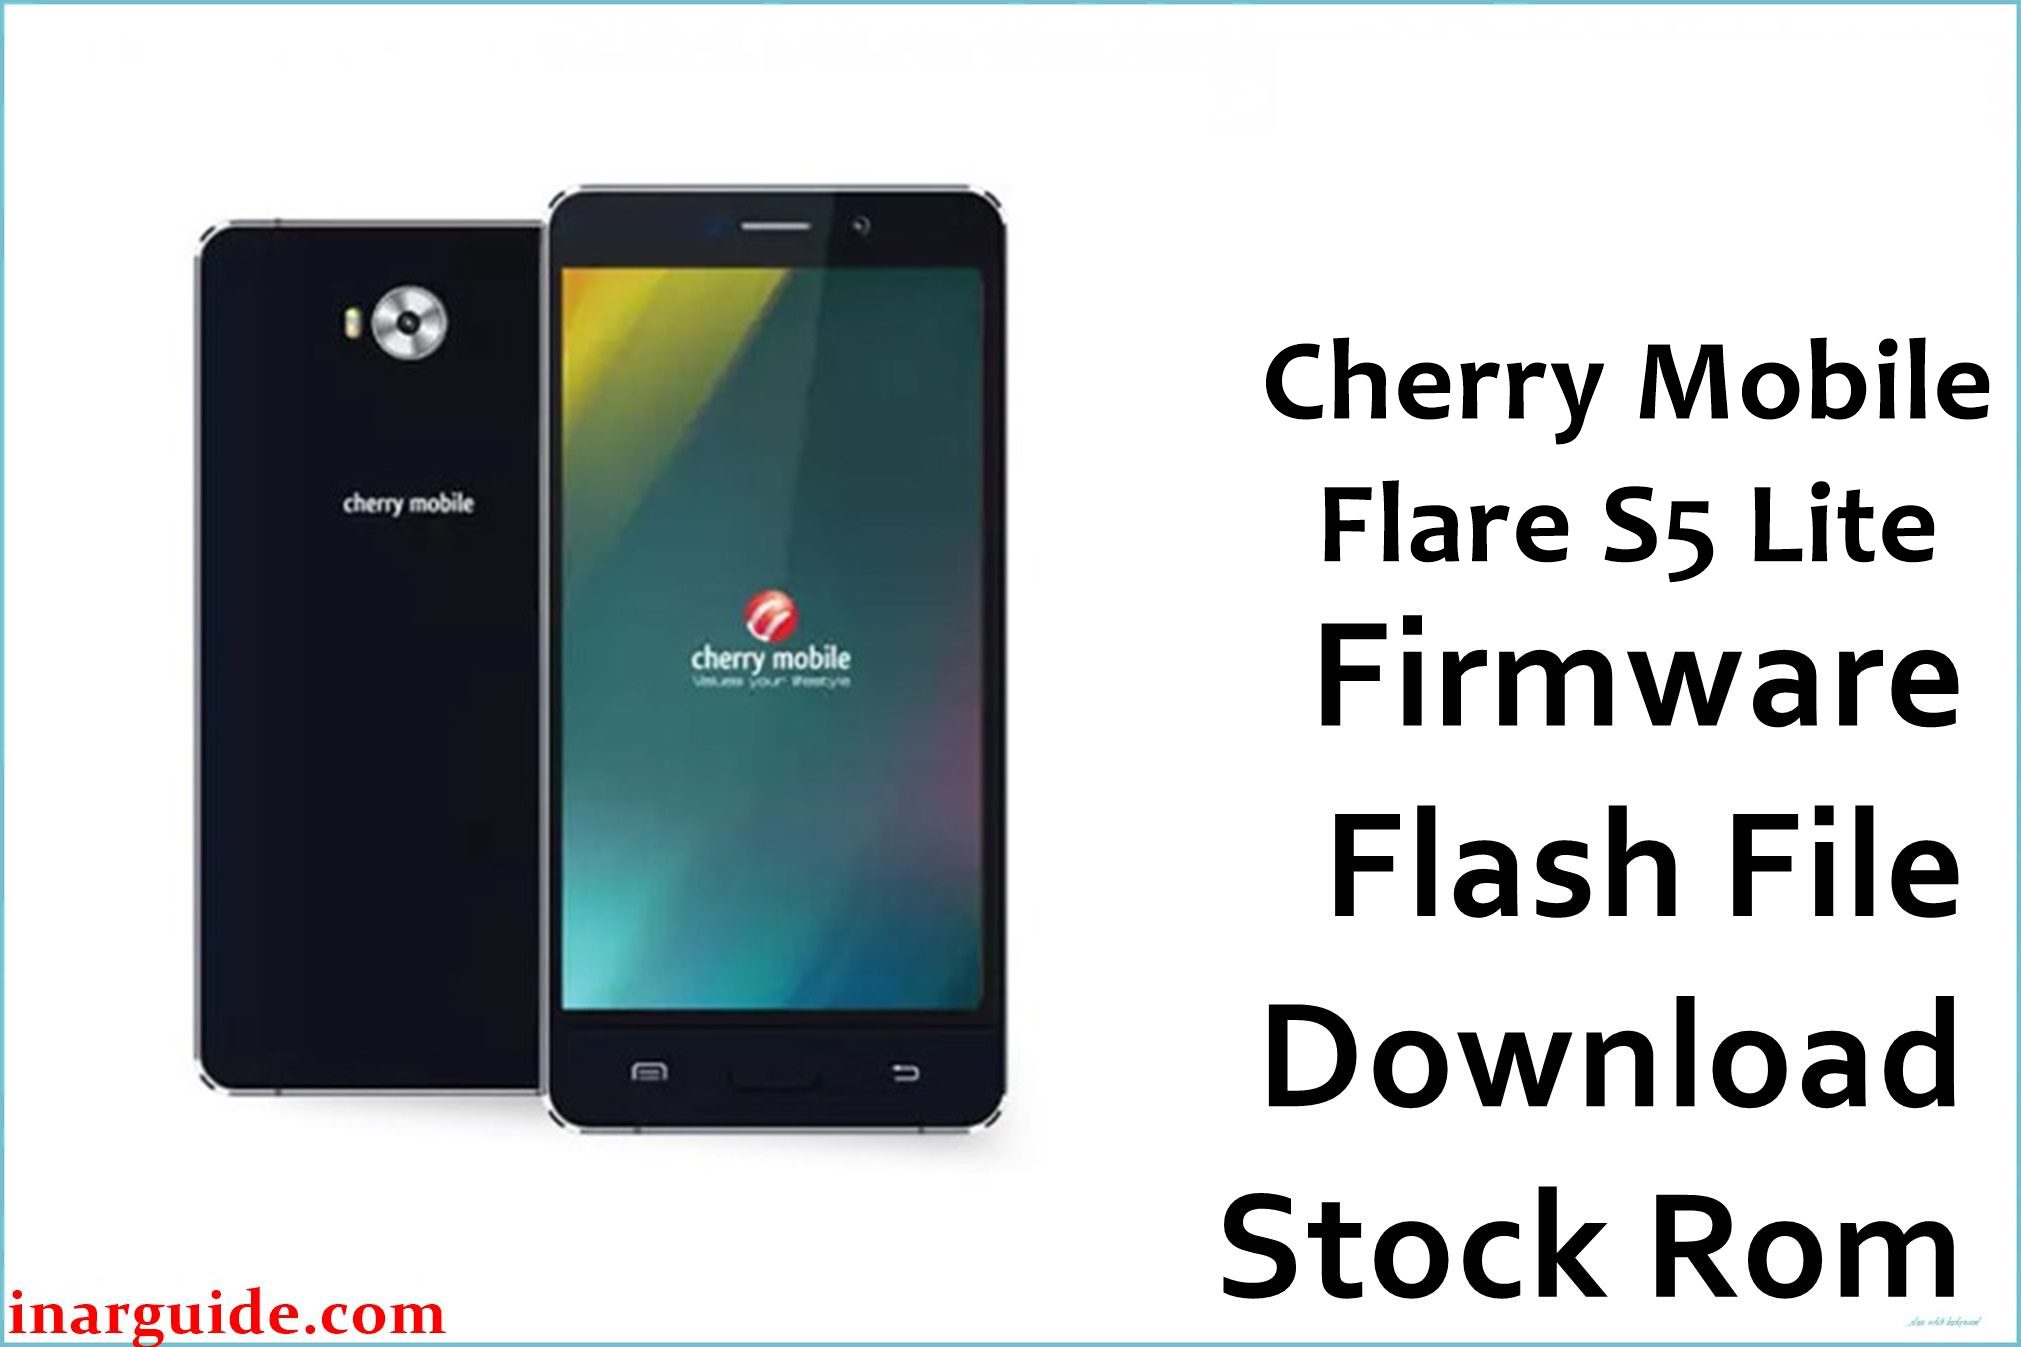 Cherry Mobile Flare S5 Lite